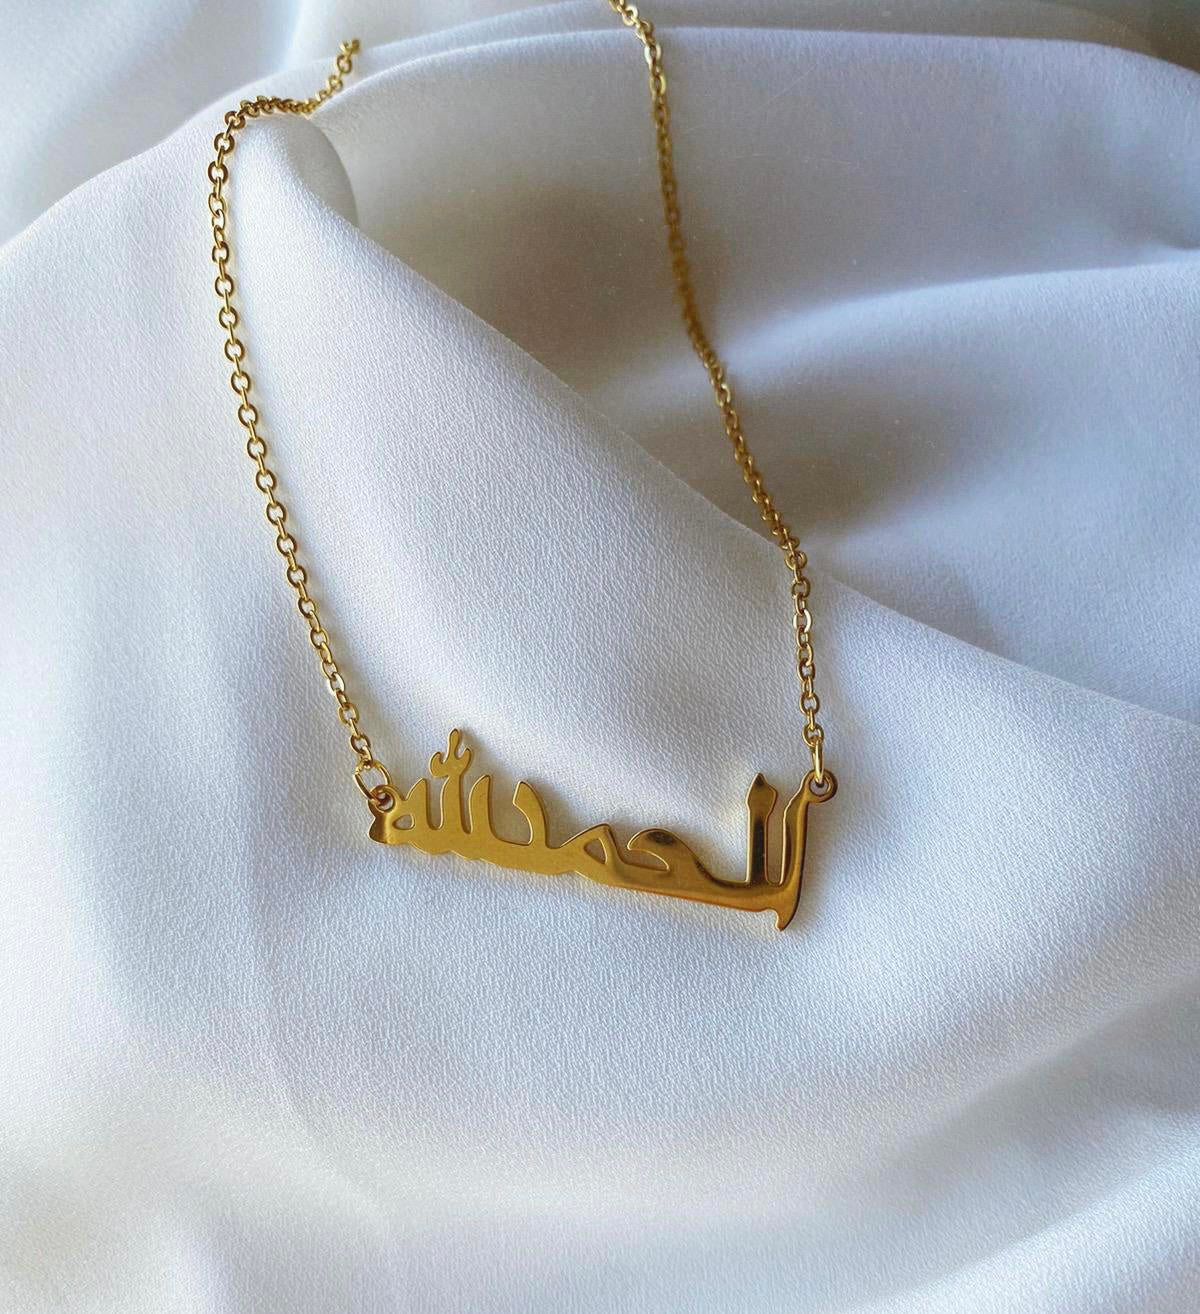 geweer verloving Beurs Arabic Jewelry - De mooiste Arabische sieraden en juwelen